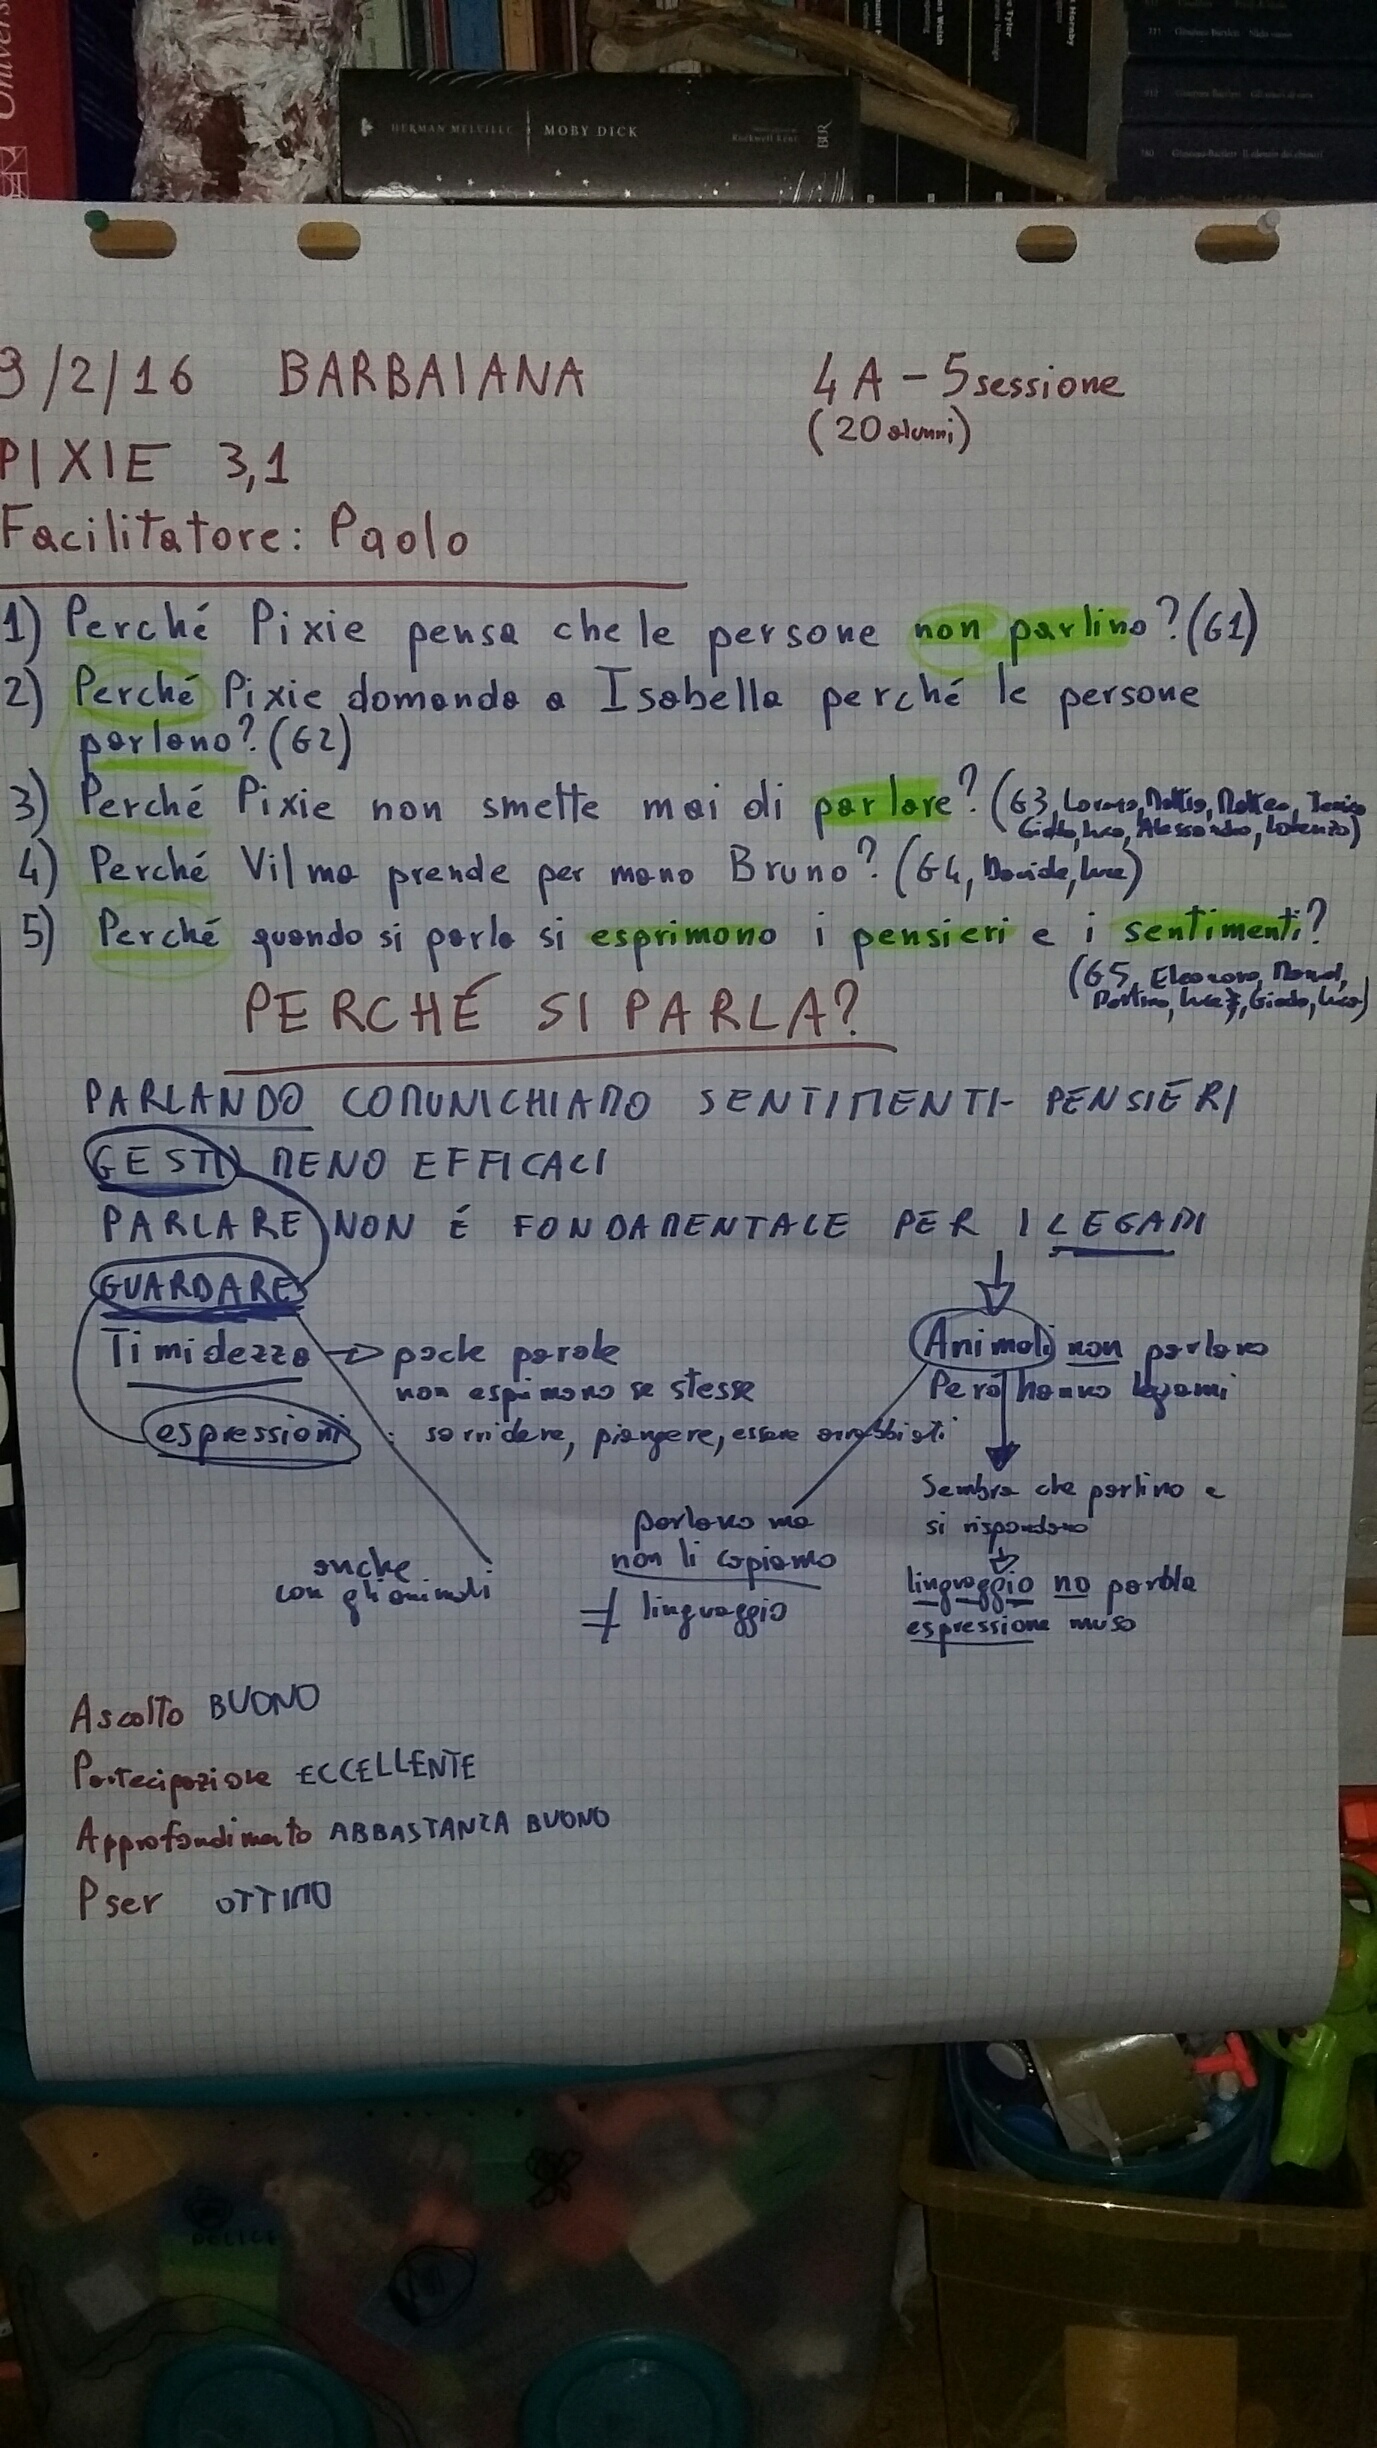 Un esempio di Agenda compilata nel corso di una sessione di Filosofia per bambini in una quarta elementare.